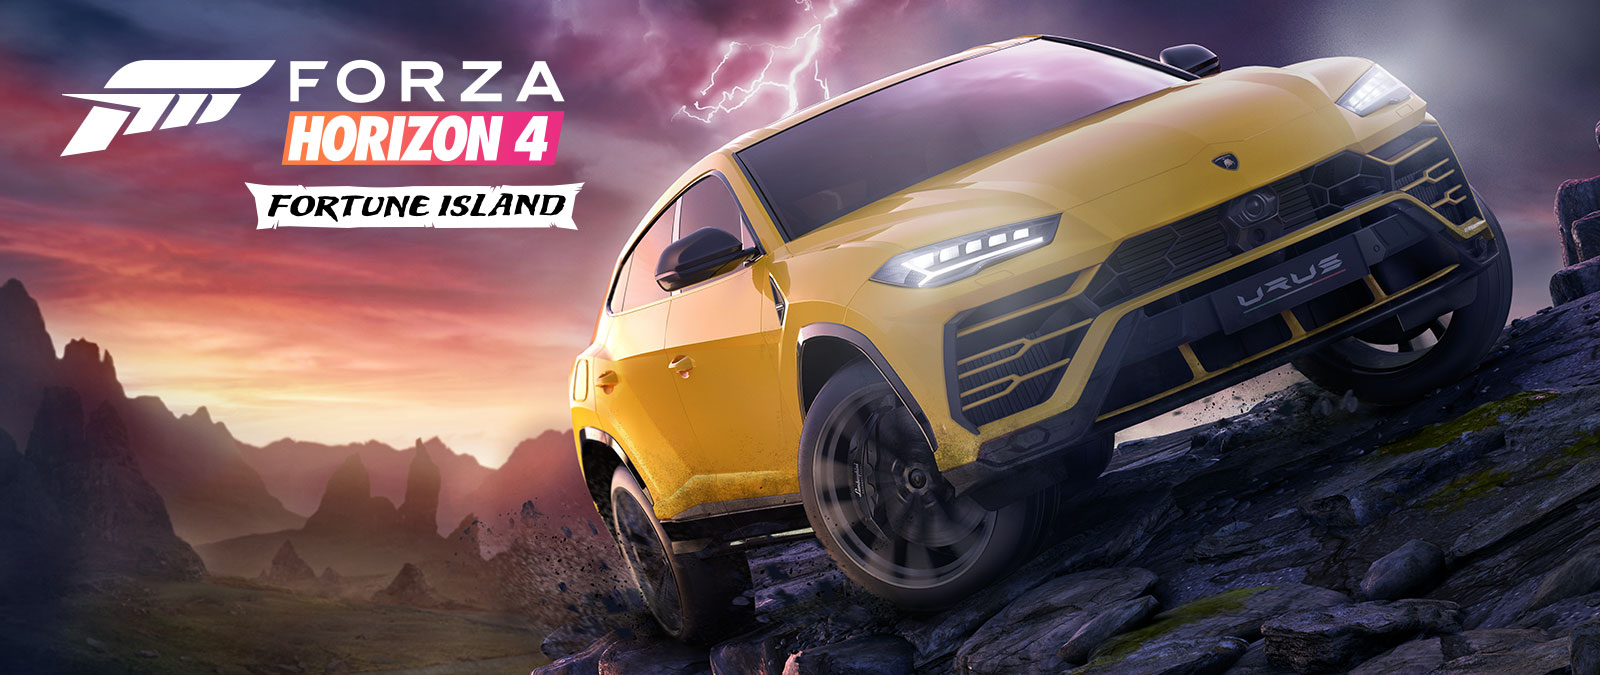 Forza Horizon 4 Fortune Island, um Lamborghini Urus amarelo dirige em um terreno periogoso com raios no fundo